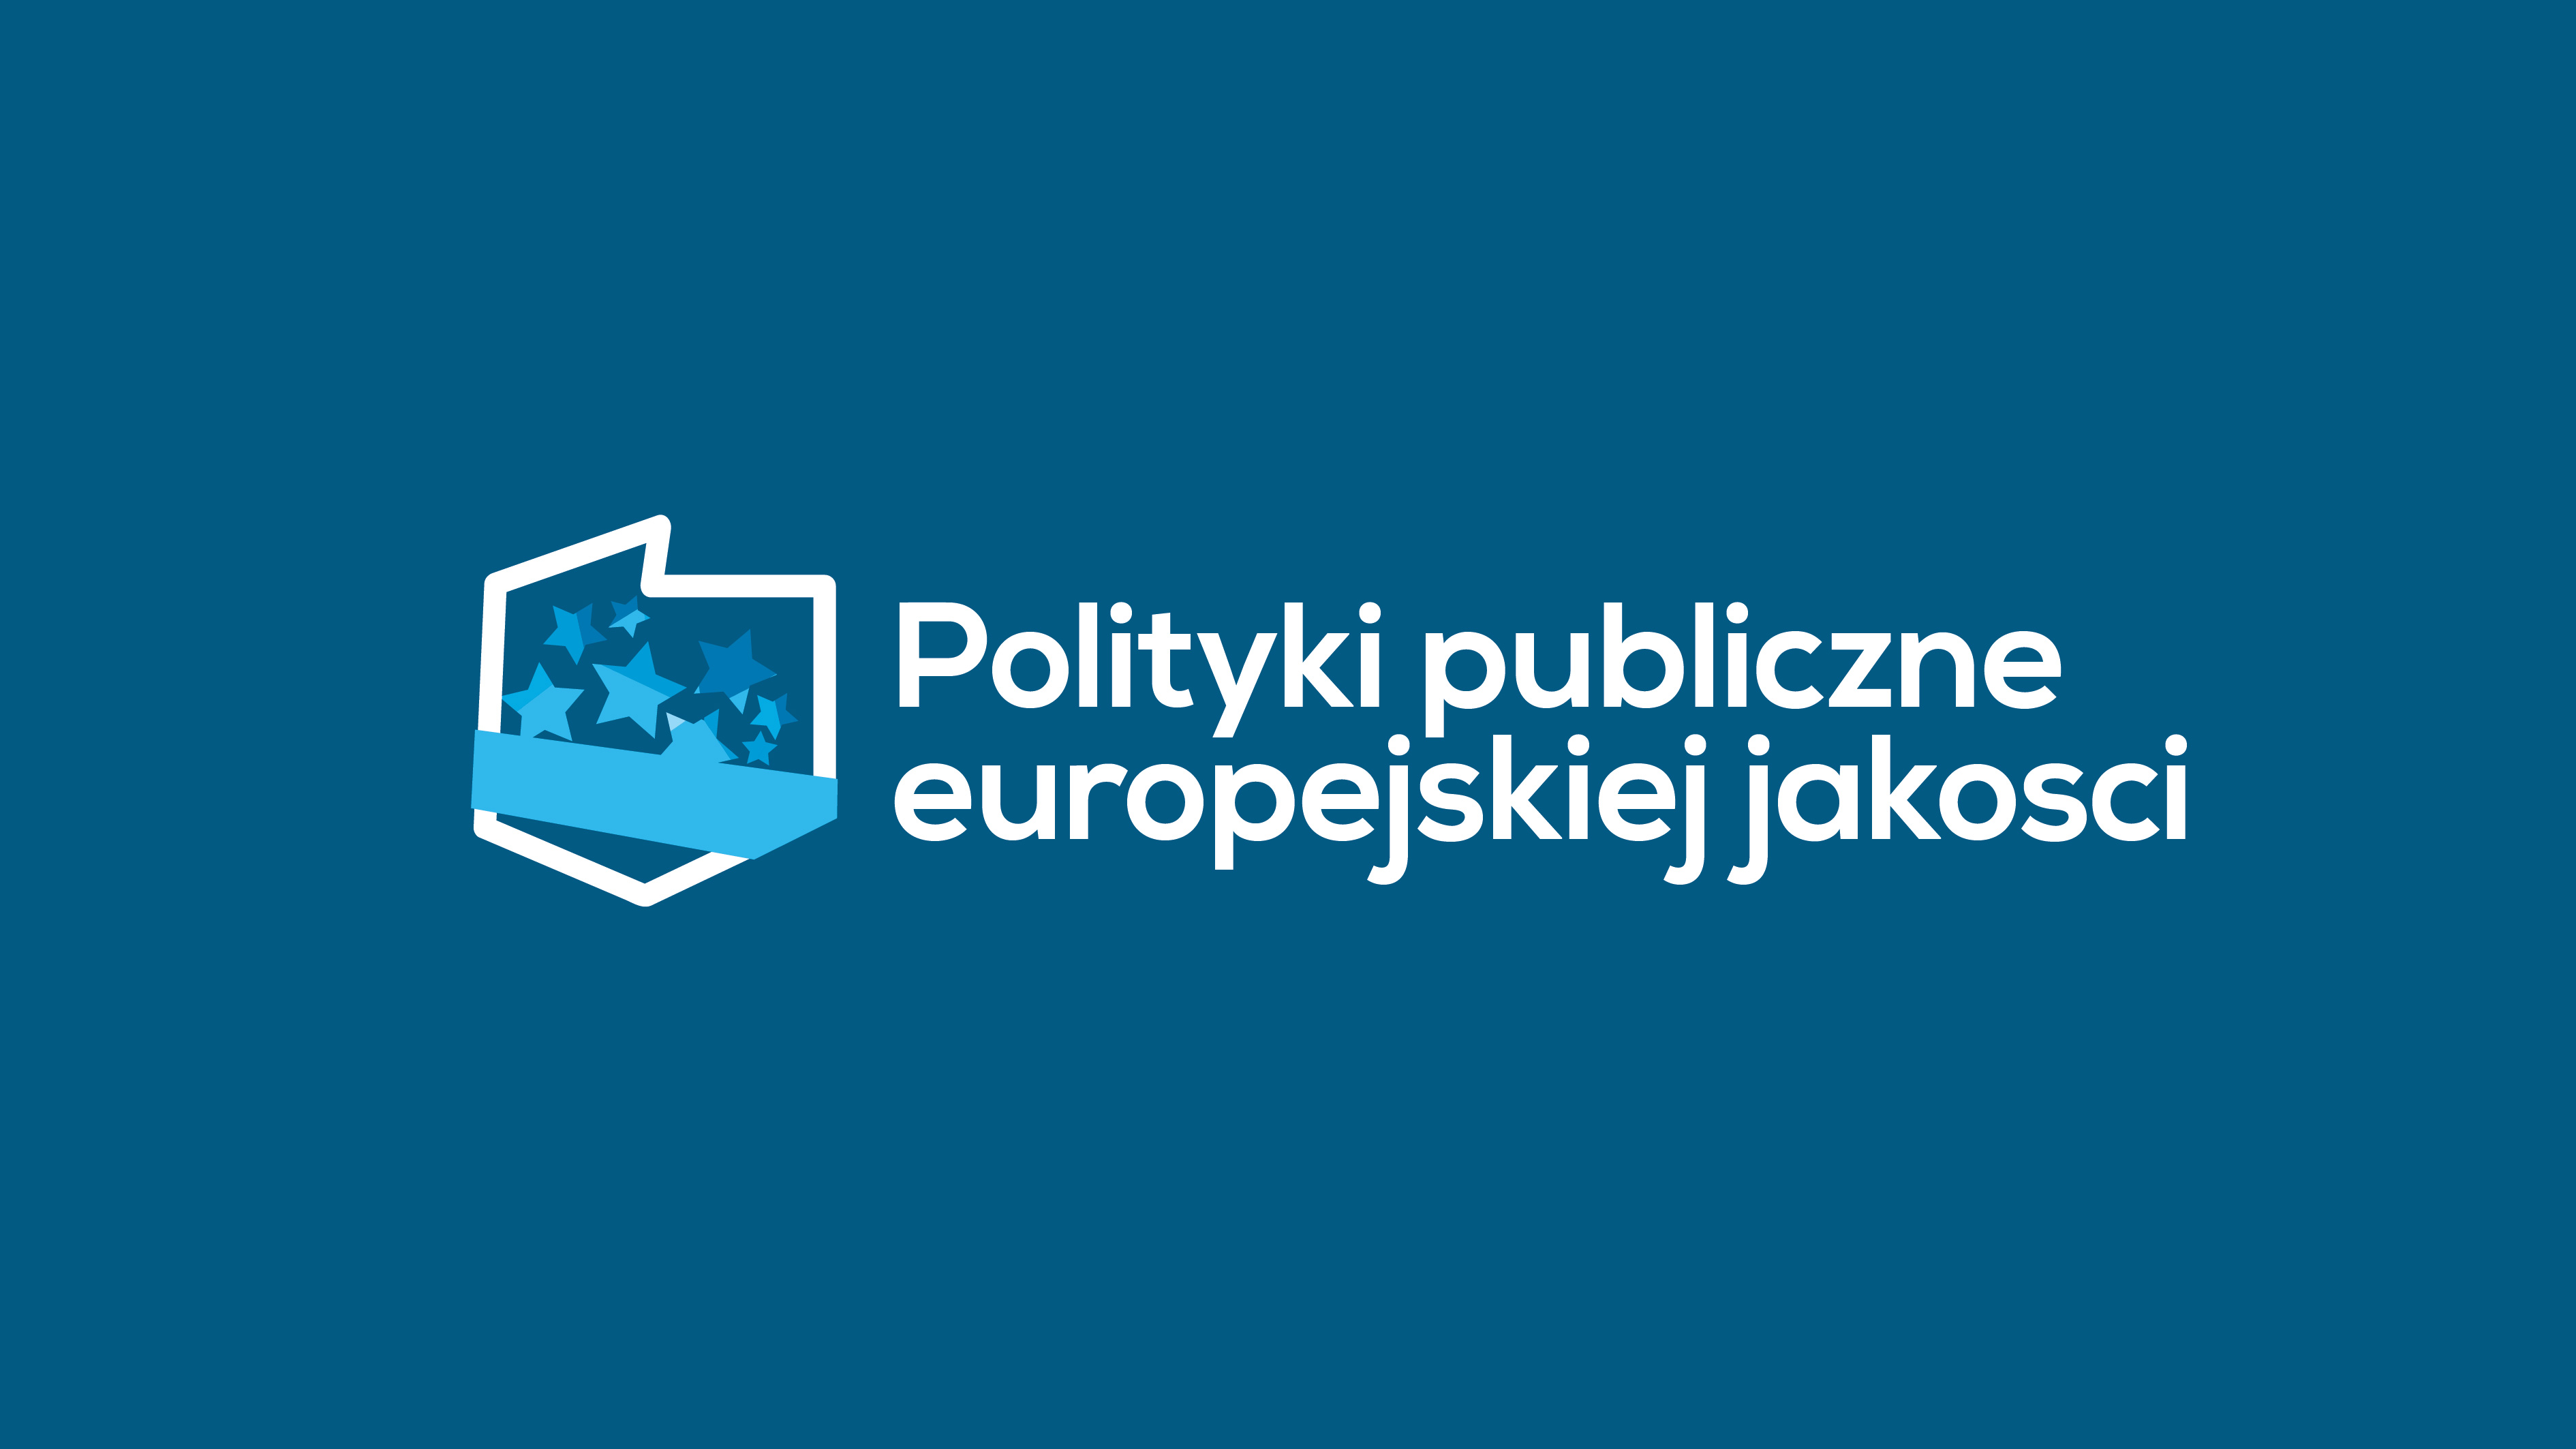 Przedłużamy rekrutację do projektu "Polityki publiczne europejskiej jakości"